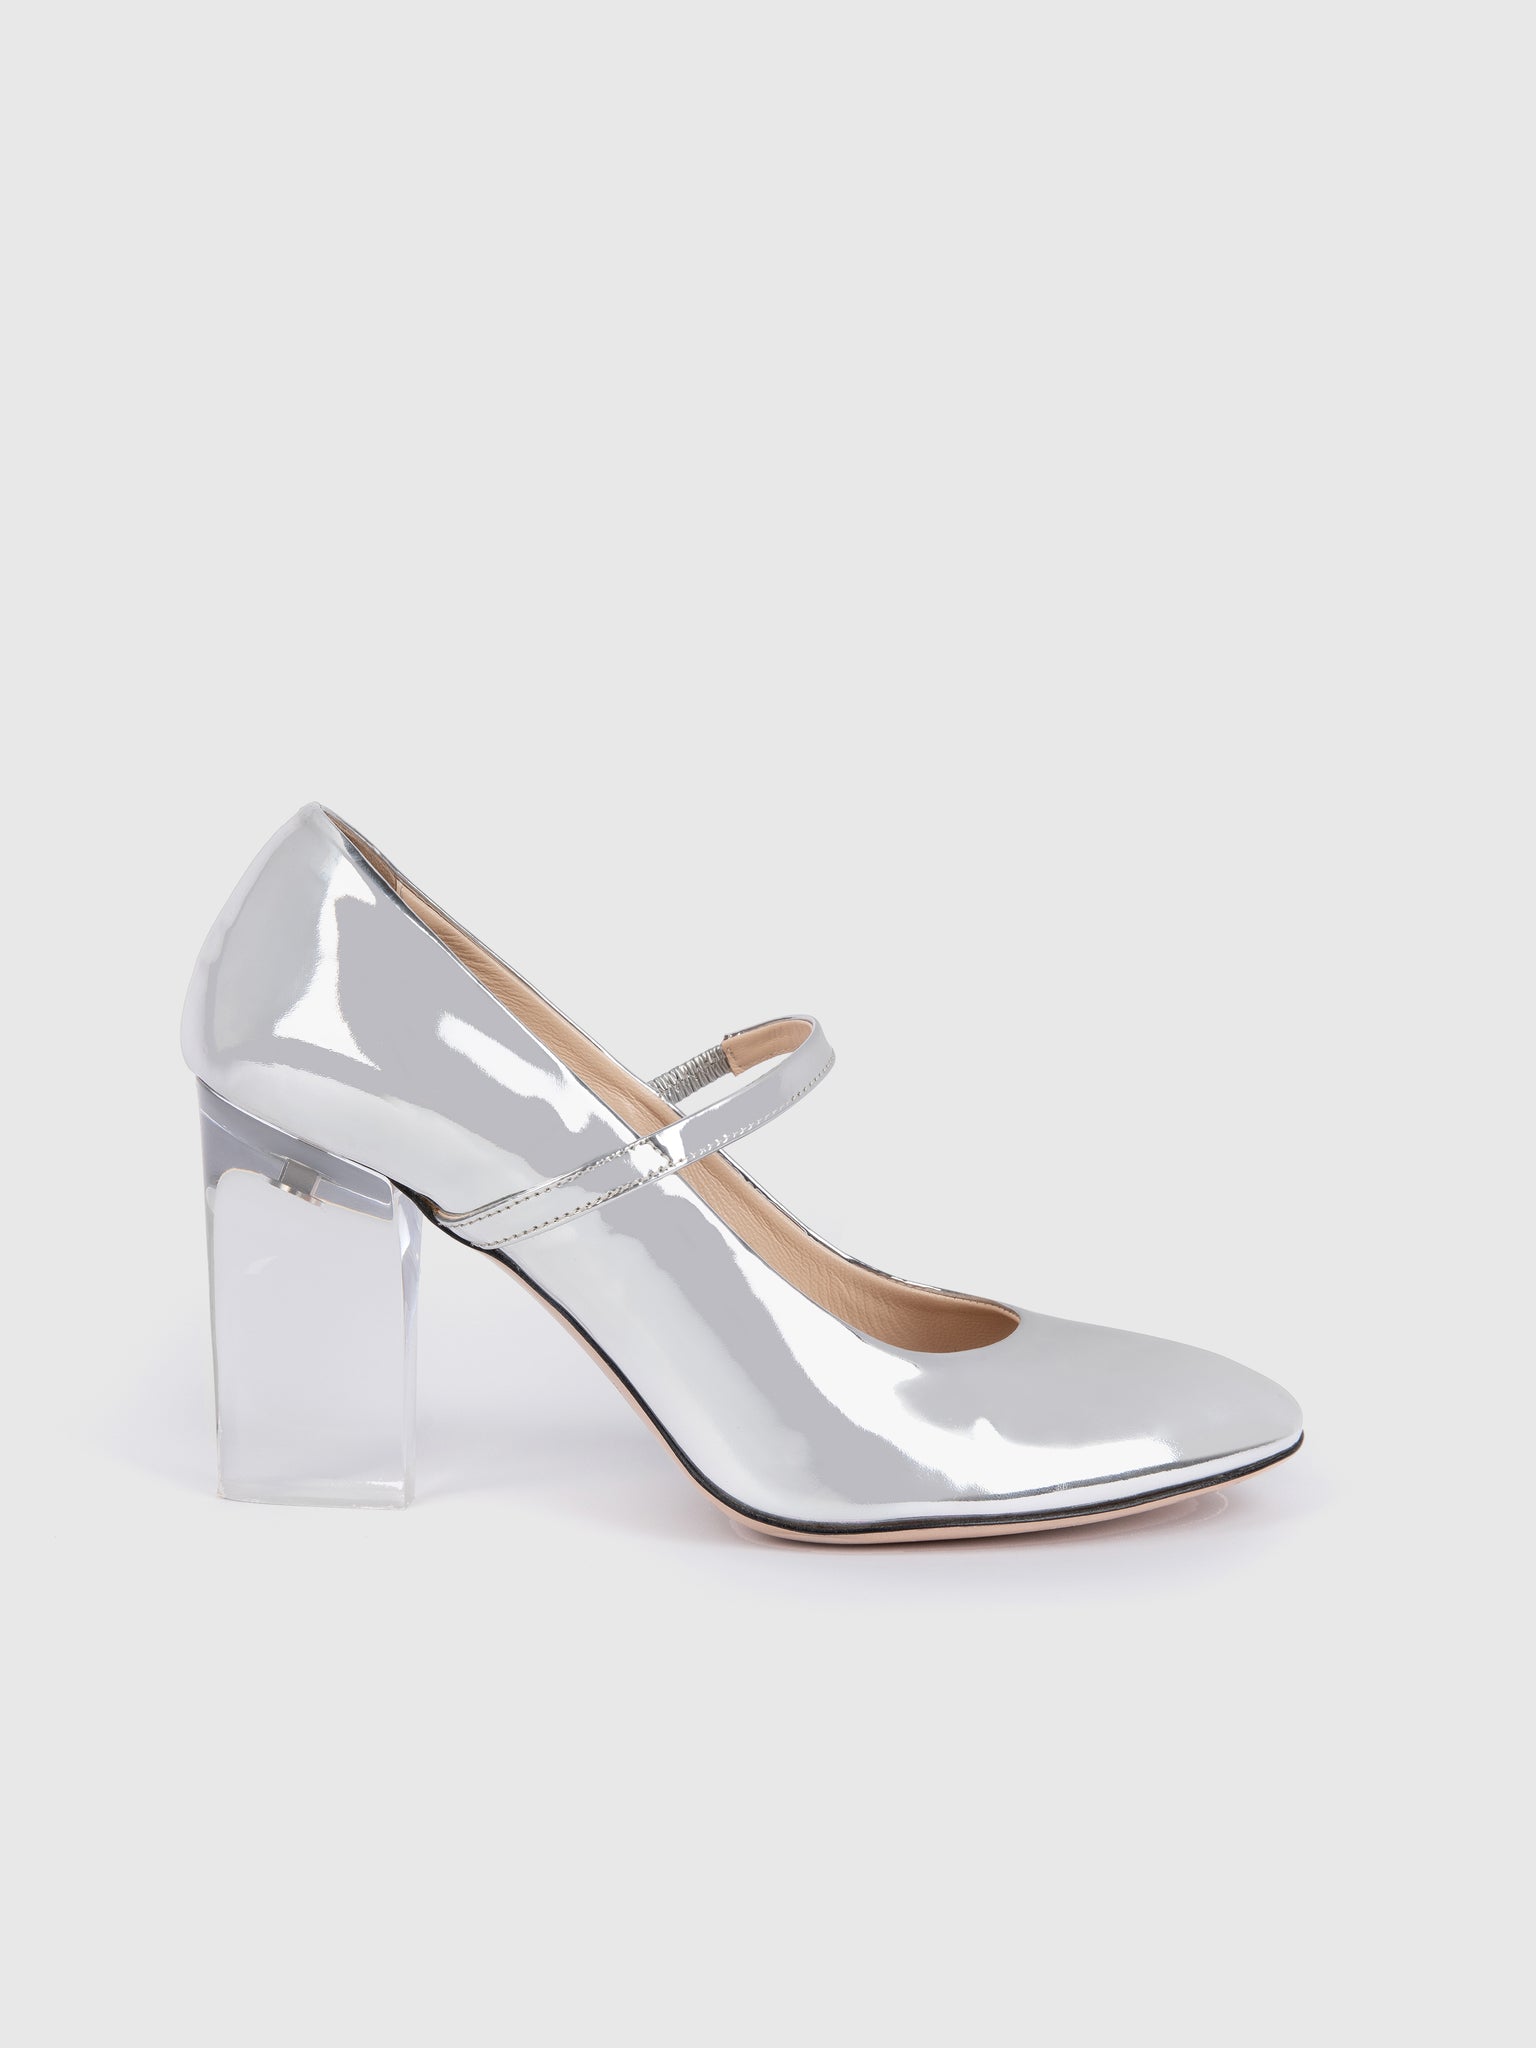 Orelia Plexi Glass Heel | Metallic Silver Mary-Jane with Plexi-Glass Heel | Emilia Wickstead